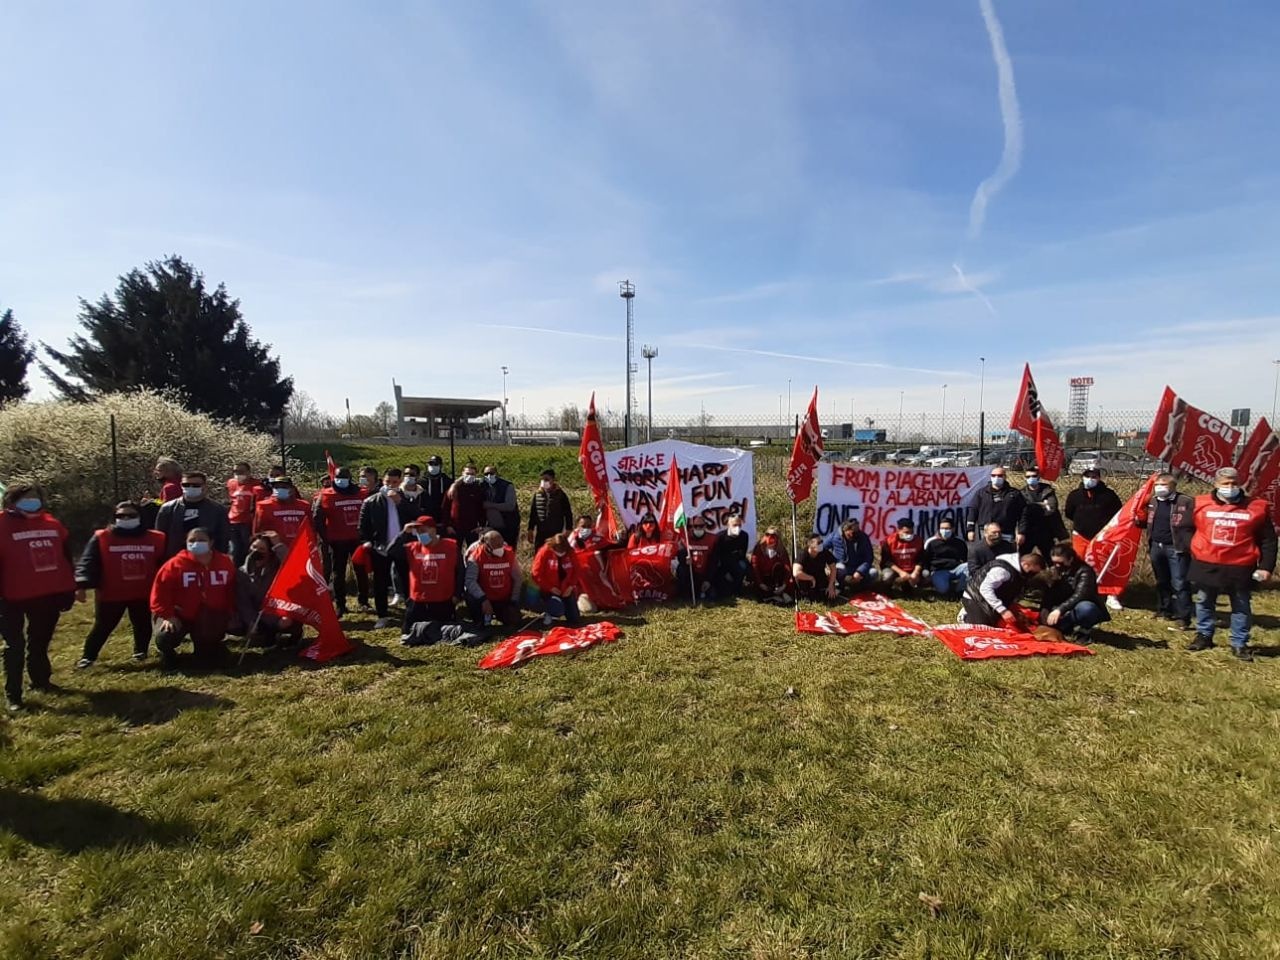 Foto: CGILDe strejkande arbetarna i Piacenza skickade en solidaritetshälsning till Amazons lagerarbetare i Alabama i USA, som just nu röstar för rätten till facklig organisering.